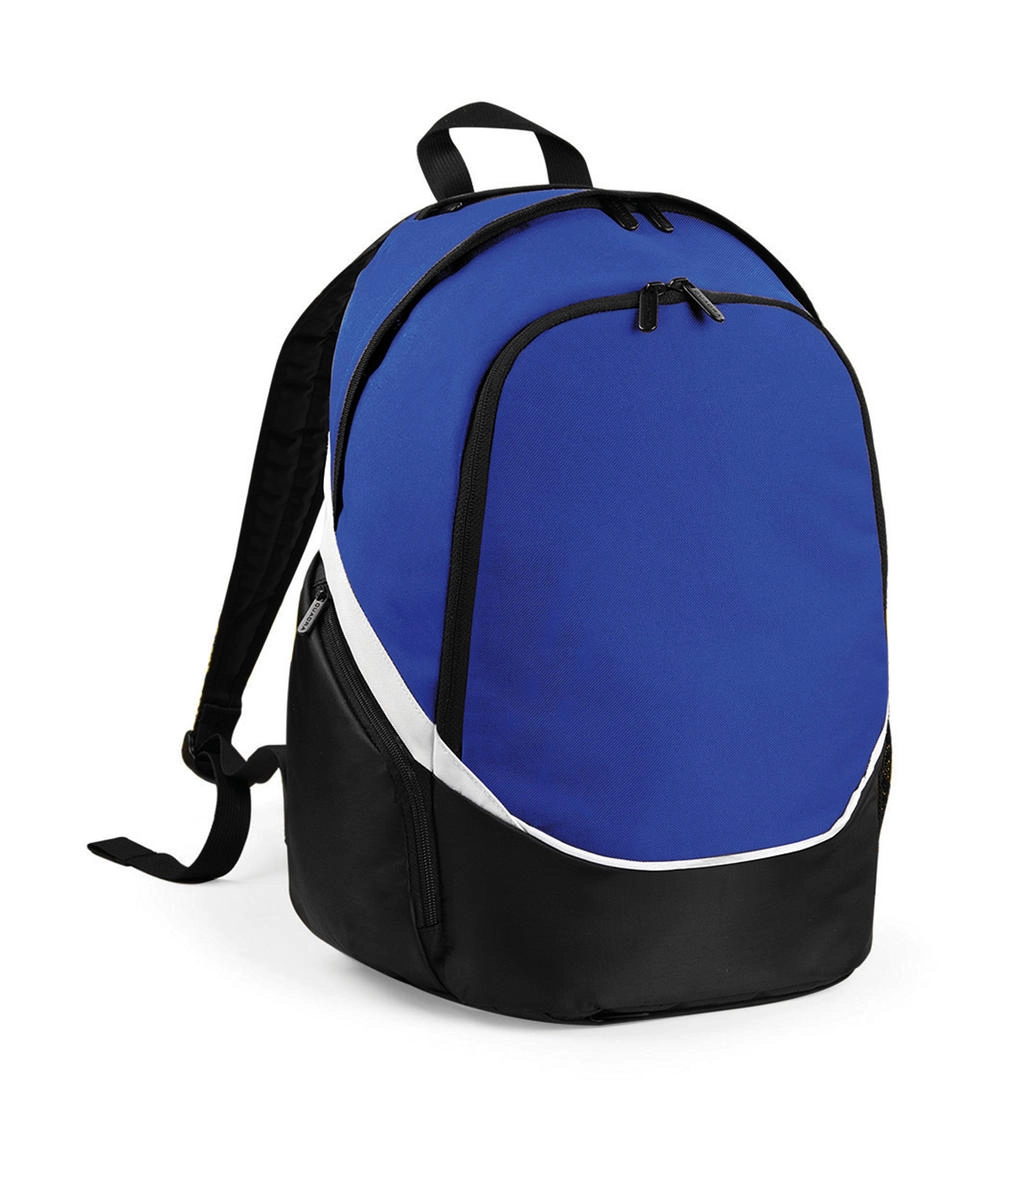 Pro Team Backpack zum Besticken und Bedrucken in der Farbe Bright Royal/Black/White mit Ihren Logo, Schriftzug oder Motiv.